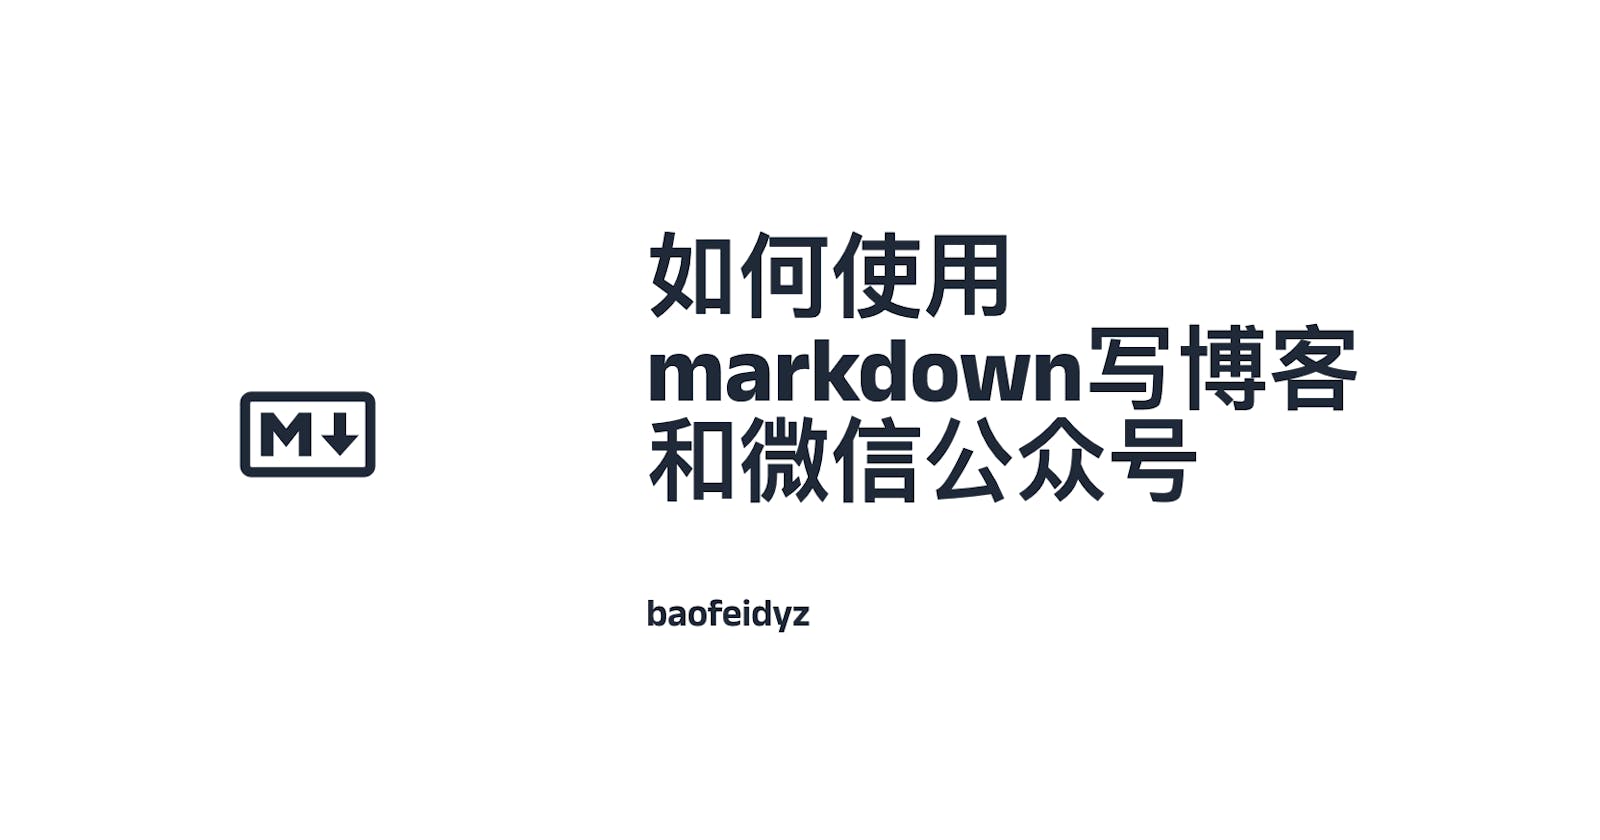 如何使用markdown写博客和微信公众号？